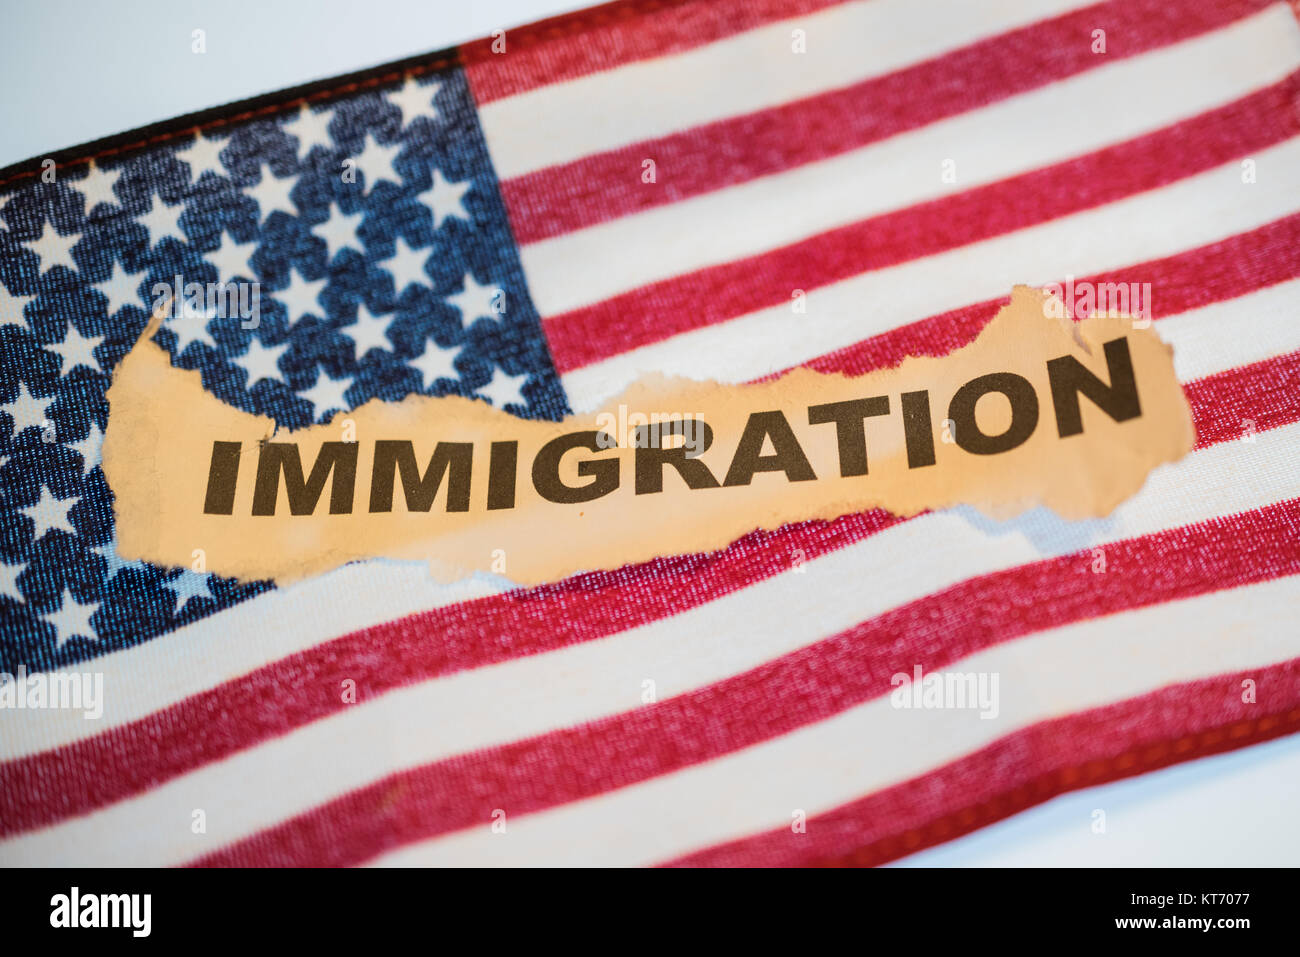 Das Wort "Einwanderung" auf abgerissene alte Papier zur Festlegung auf die Vereinigten Staaten von Amerika Flagge Stockfoto